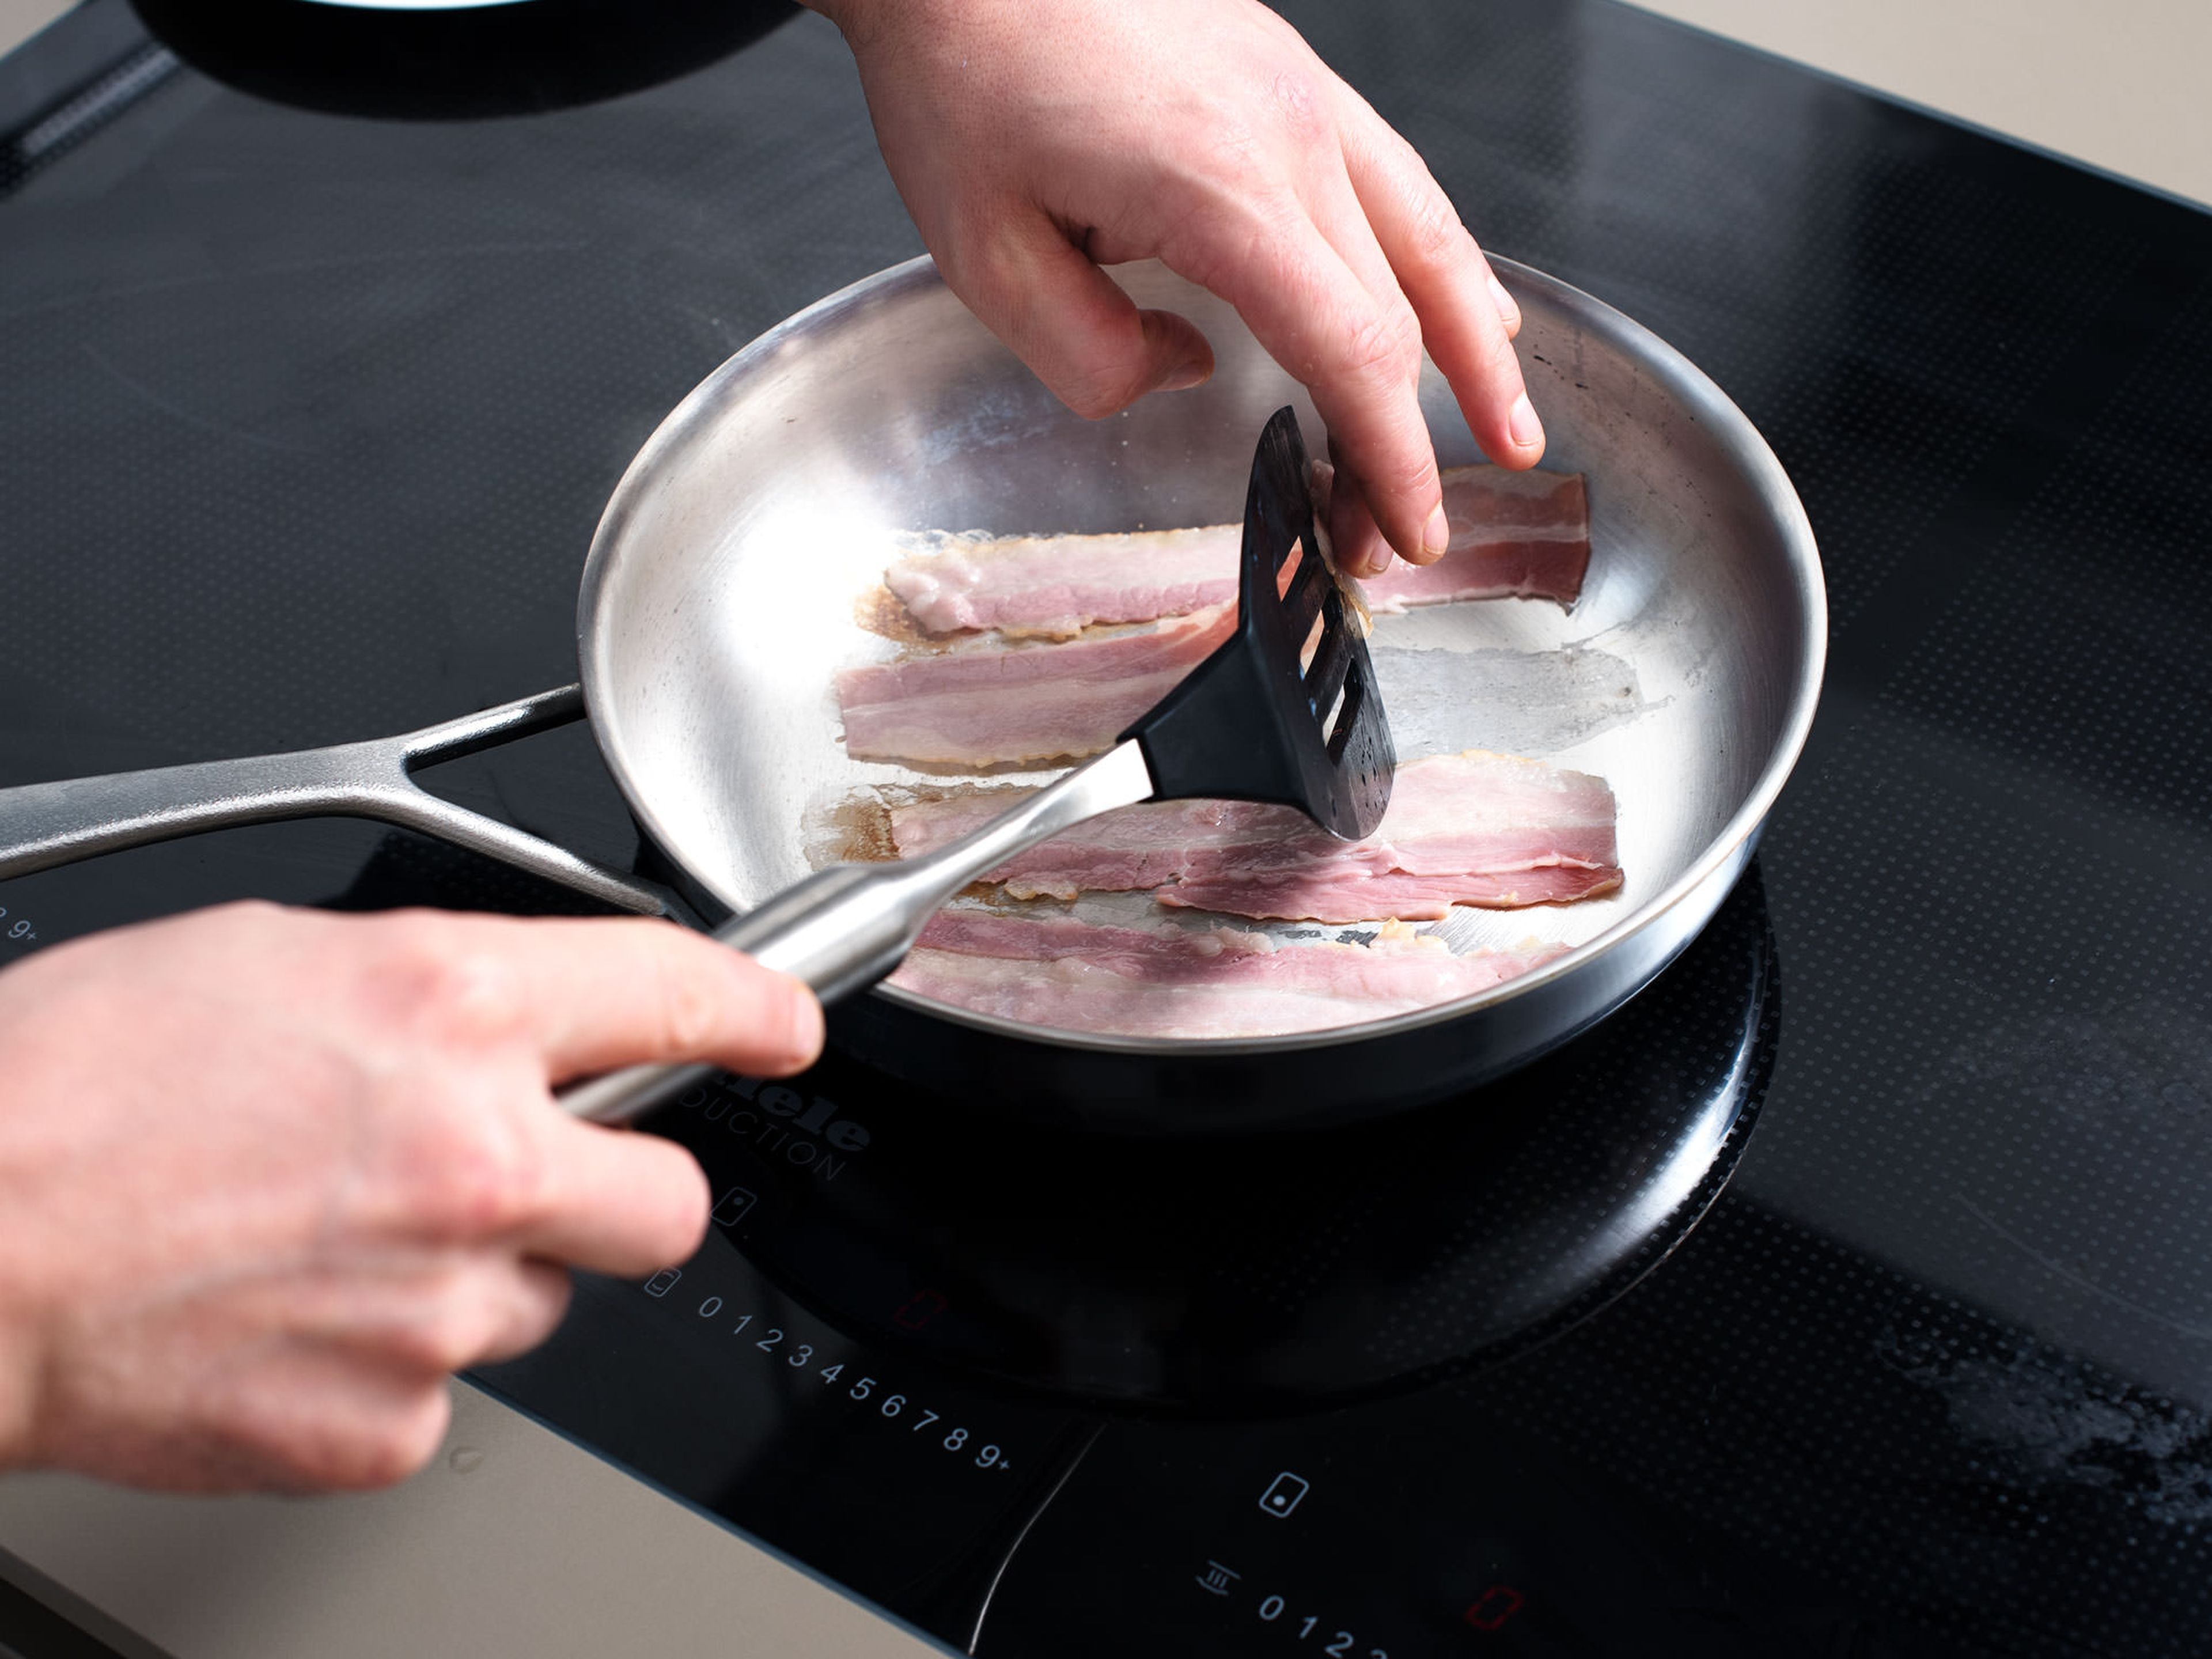 Baconscheiben in einer großen Pfanne bei mittlerer bis hoher Hitze knusprig anbraten. Aus der Pfanne nehmen und abkühlen lassen.